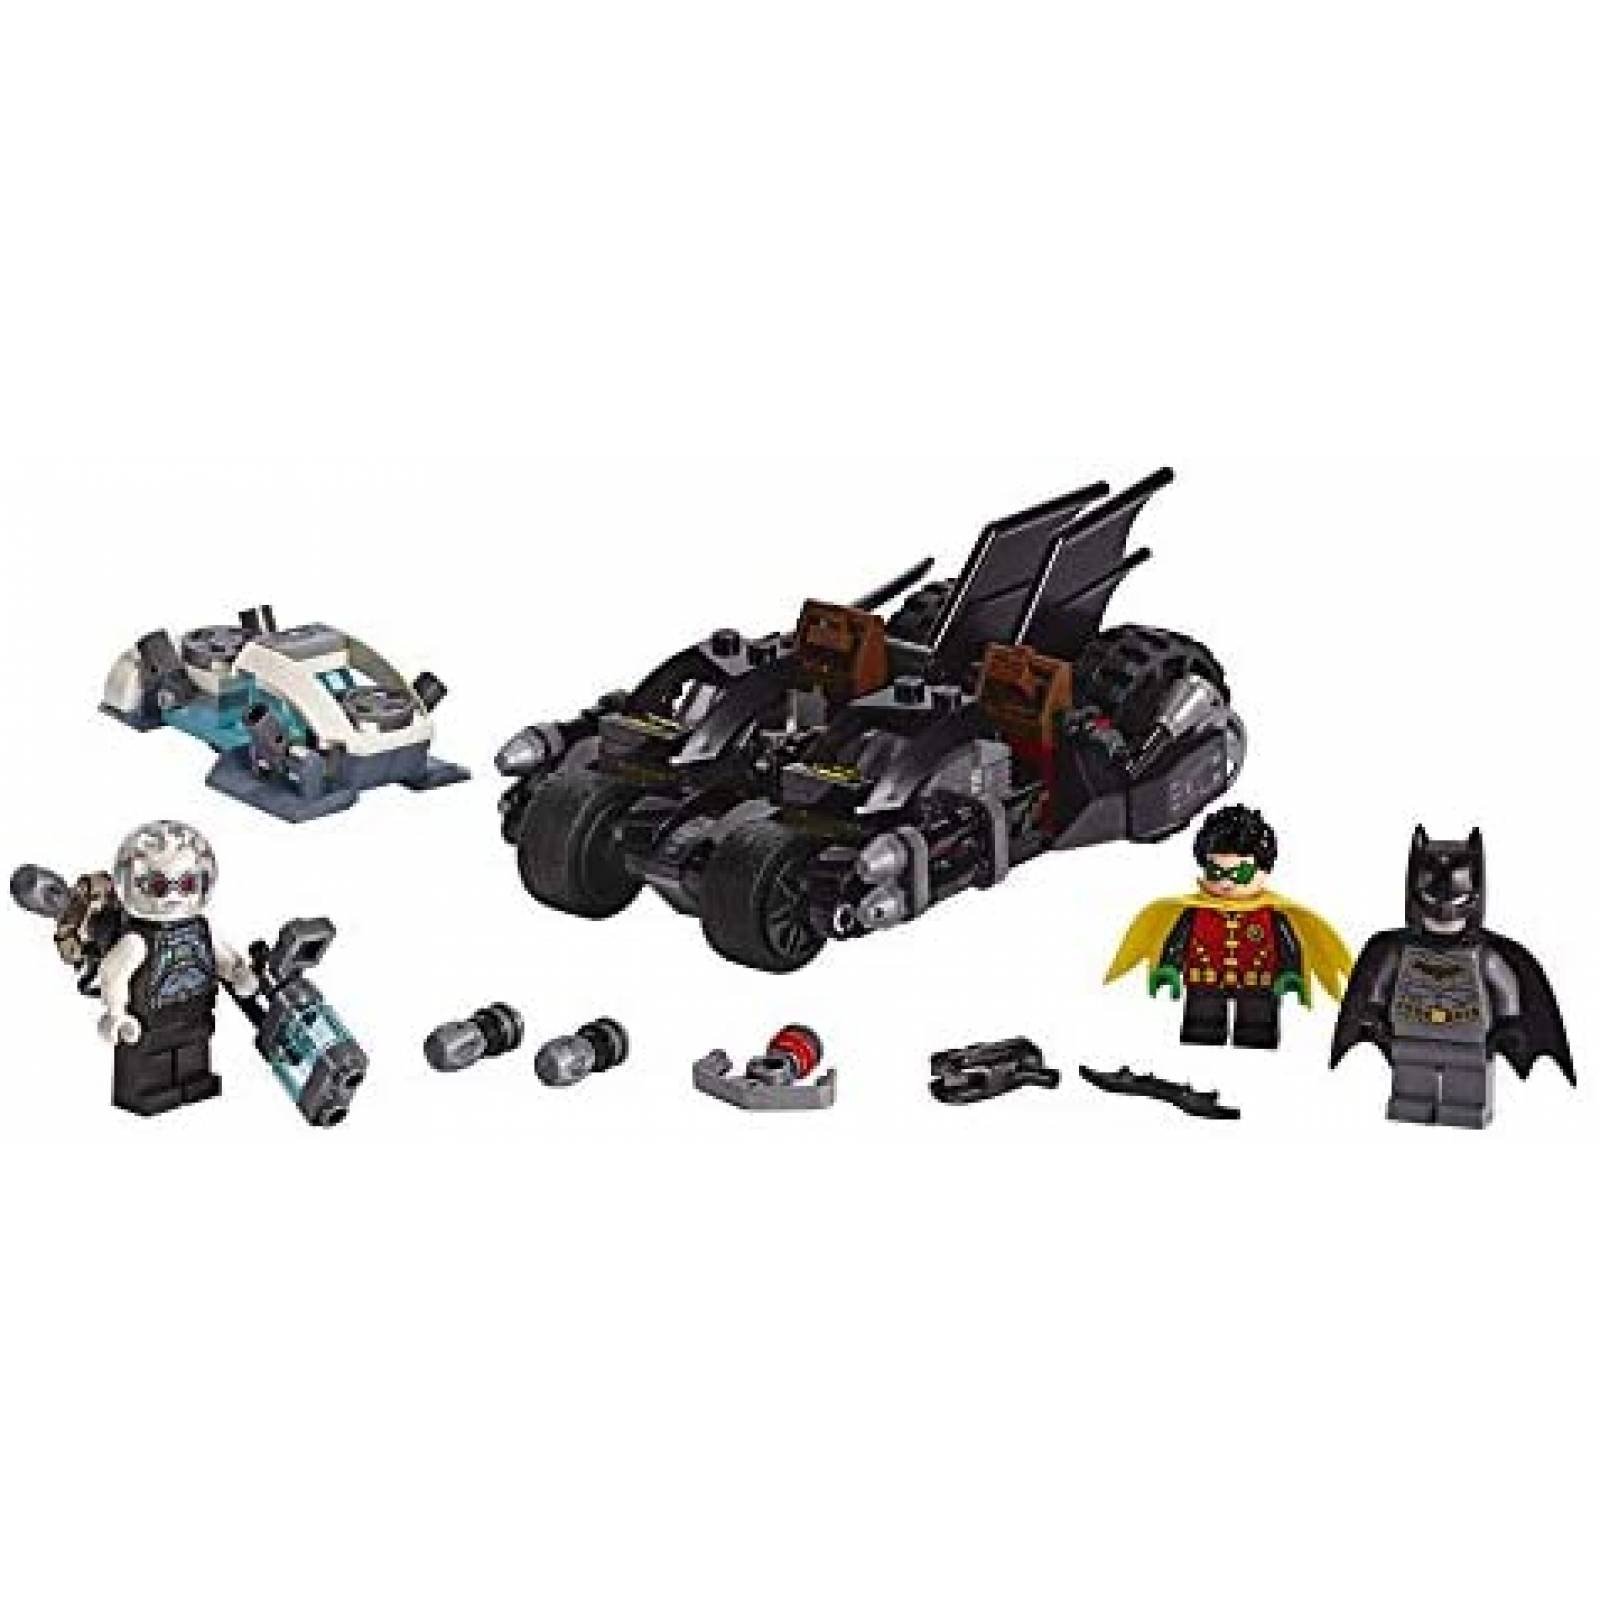 Set de Construcción LEGO Batman Mr. Freeze Batcycle 200 Pzs